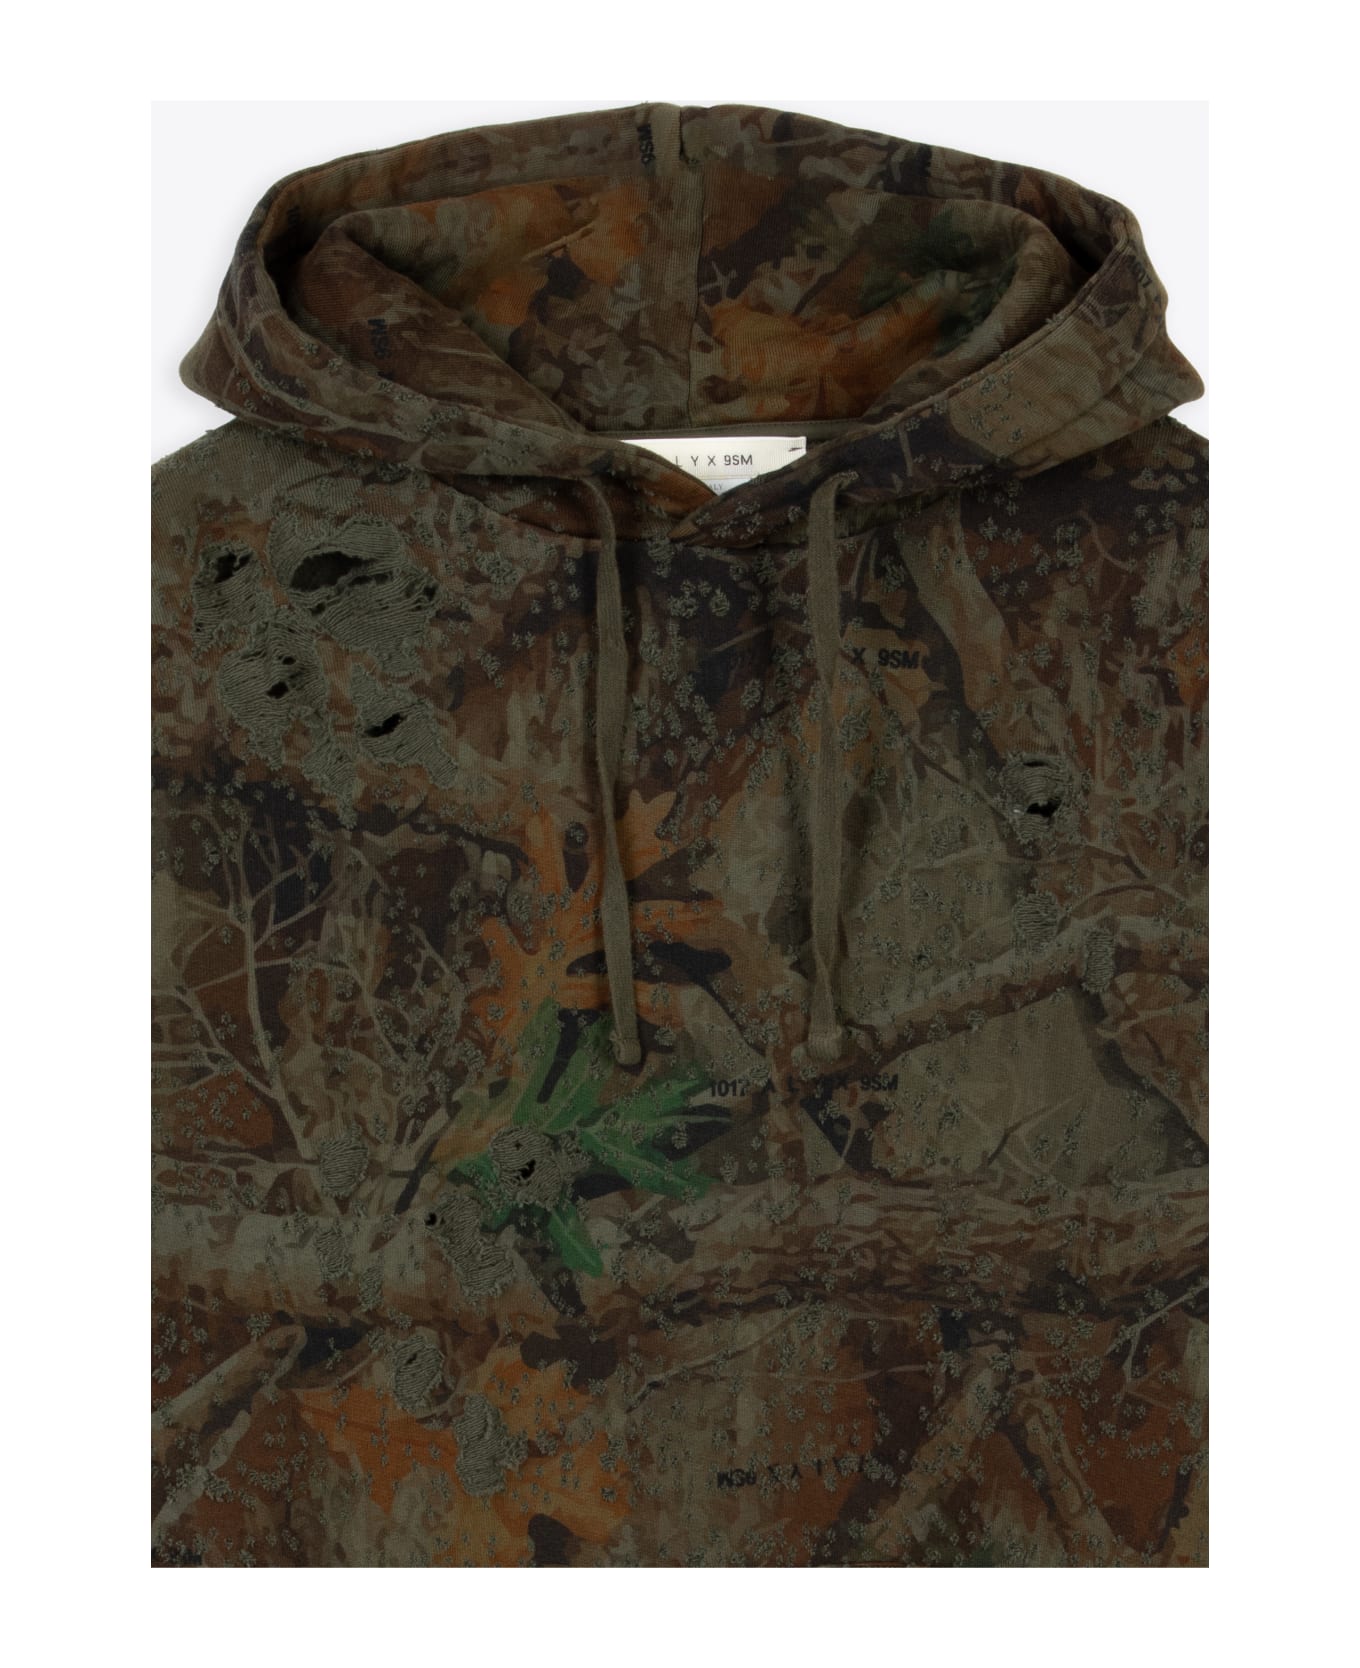 1017 ALYX 9SM Camo Hoodie Camo printed distressed cotton hoodie - Camo hoodie - Camouflage